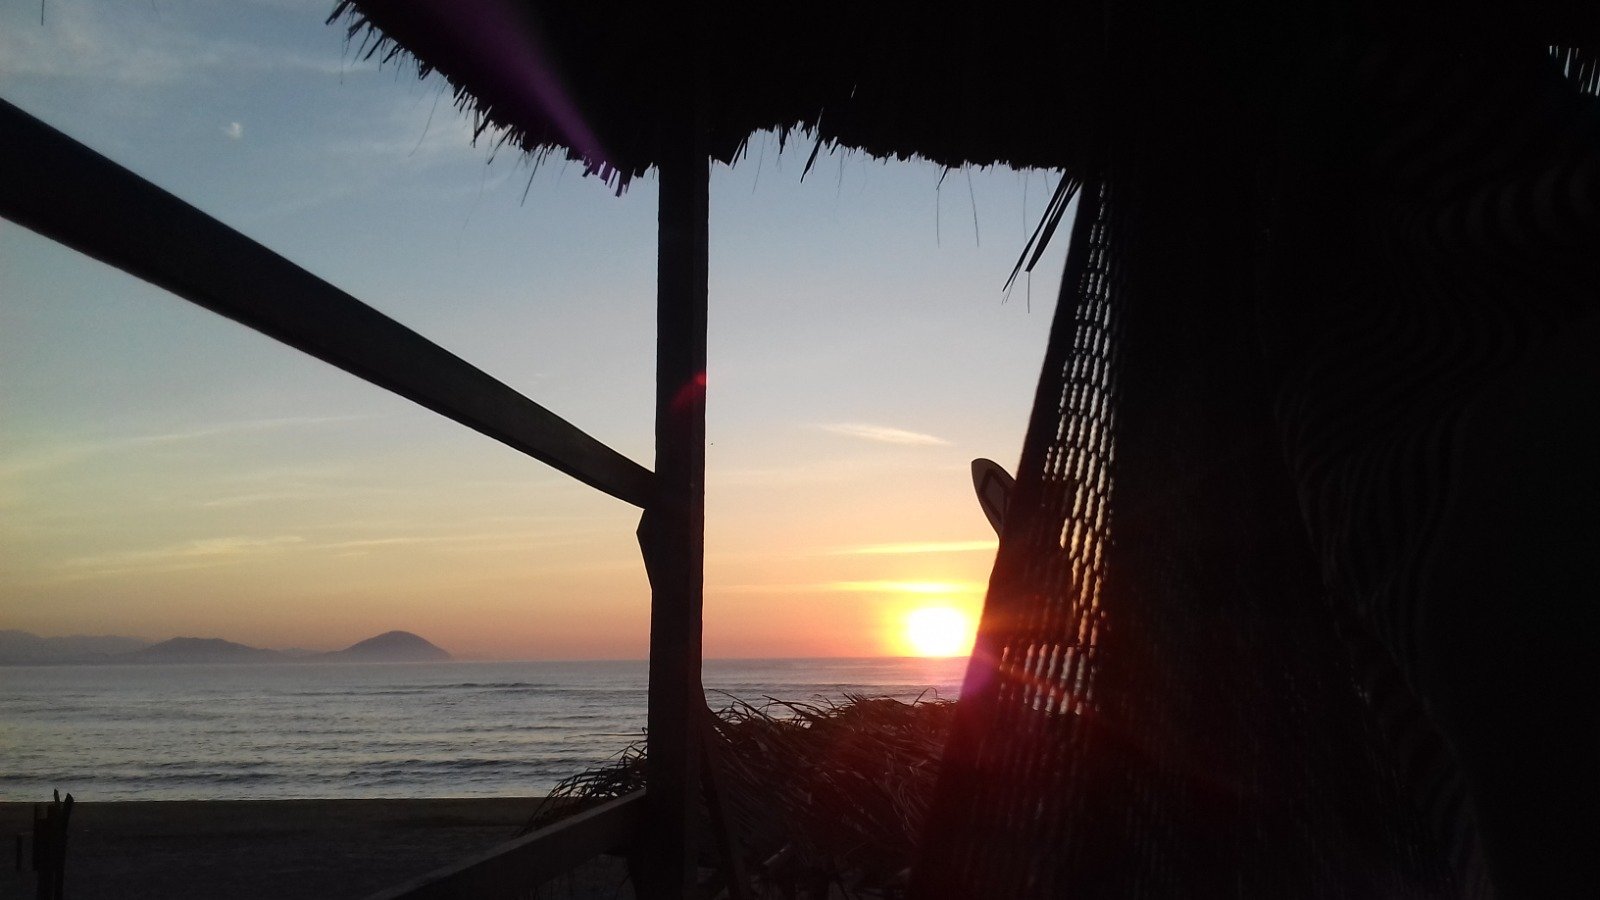 Sonnenuntergang auf dem Balkon einer der vielen einfachen Hütten in Laguna de Chacahua